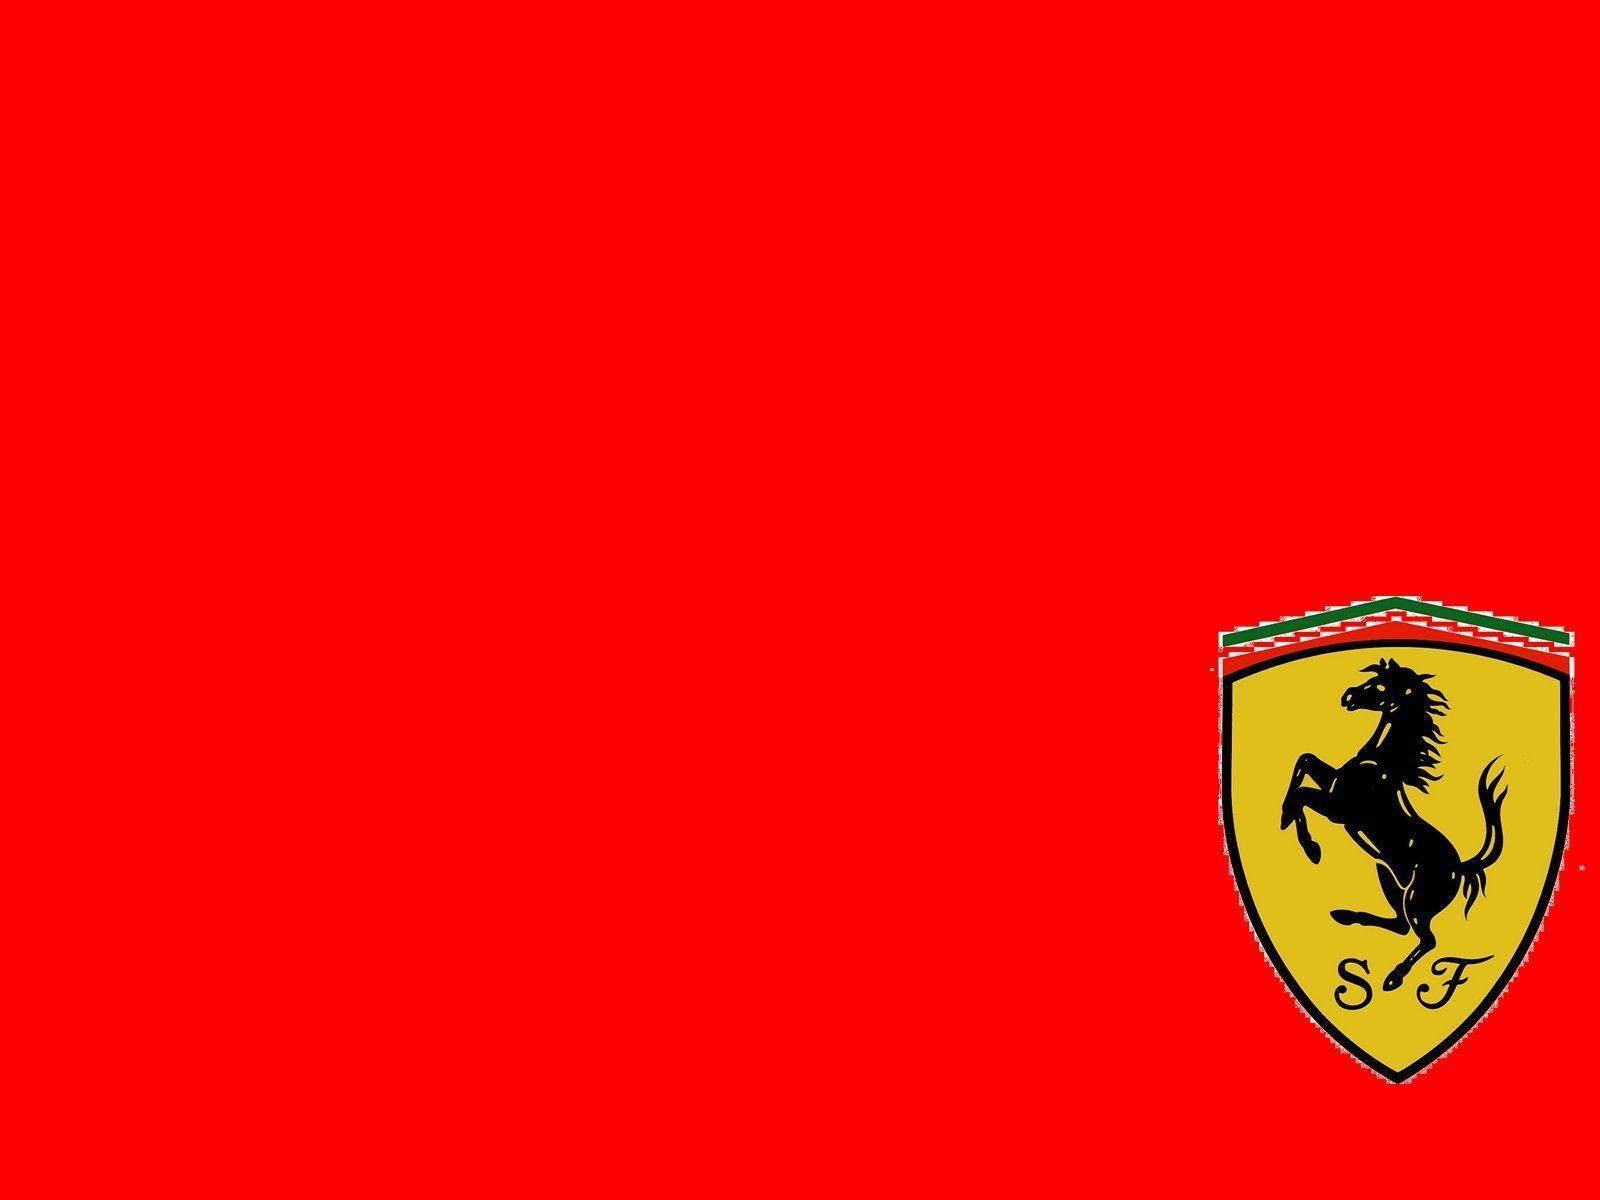 Porsche Symbol Vs Ferrari Symbol Image & Picture